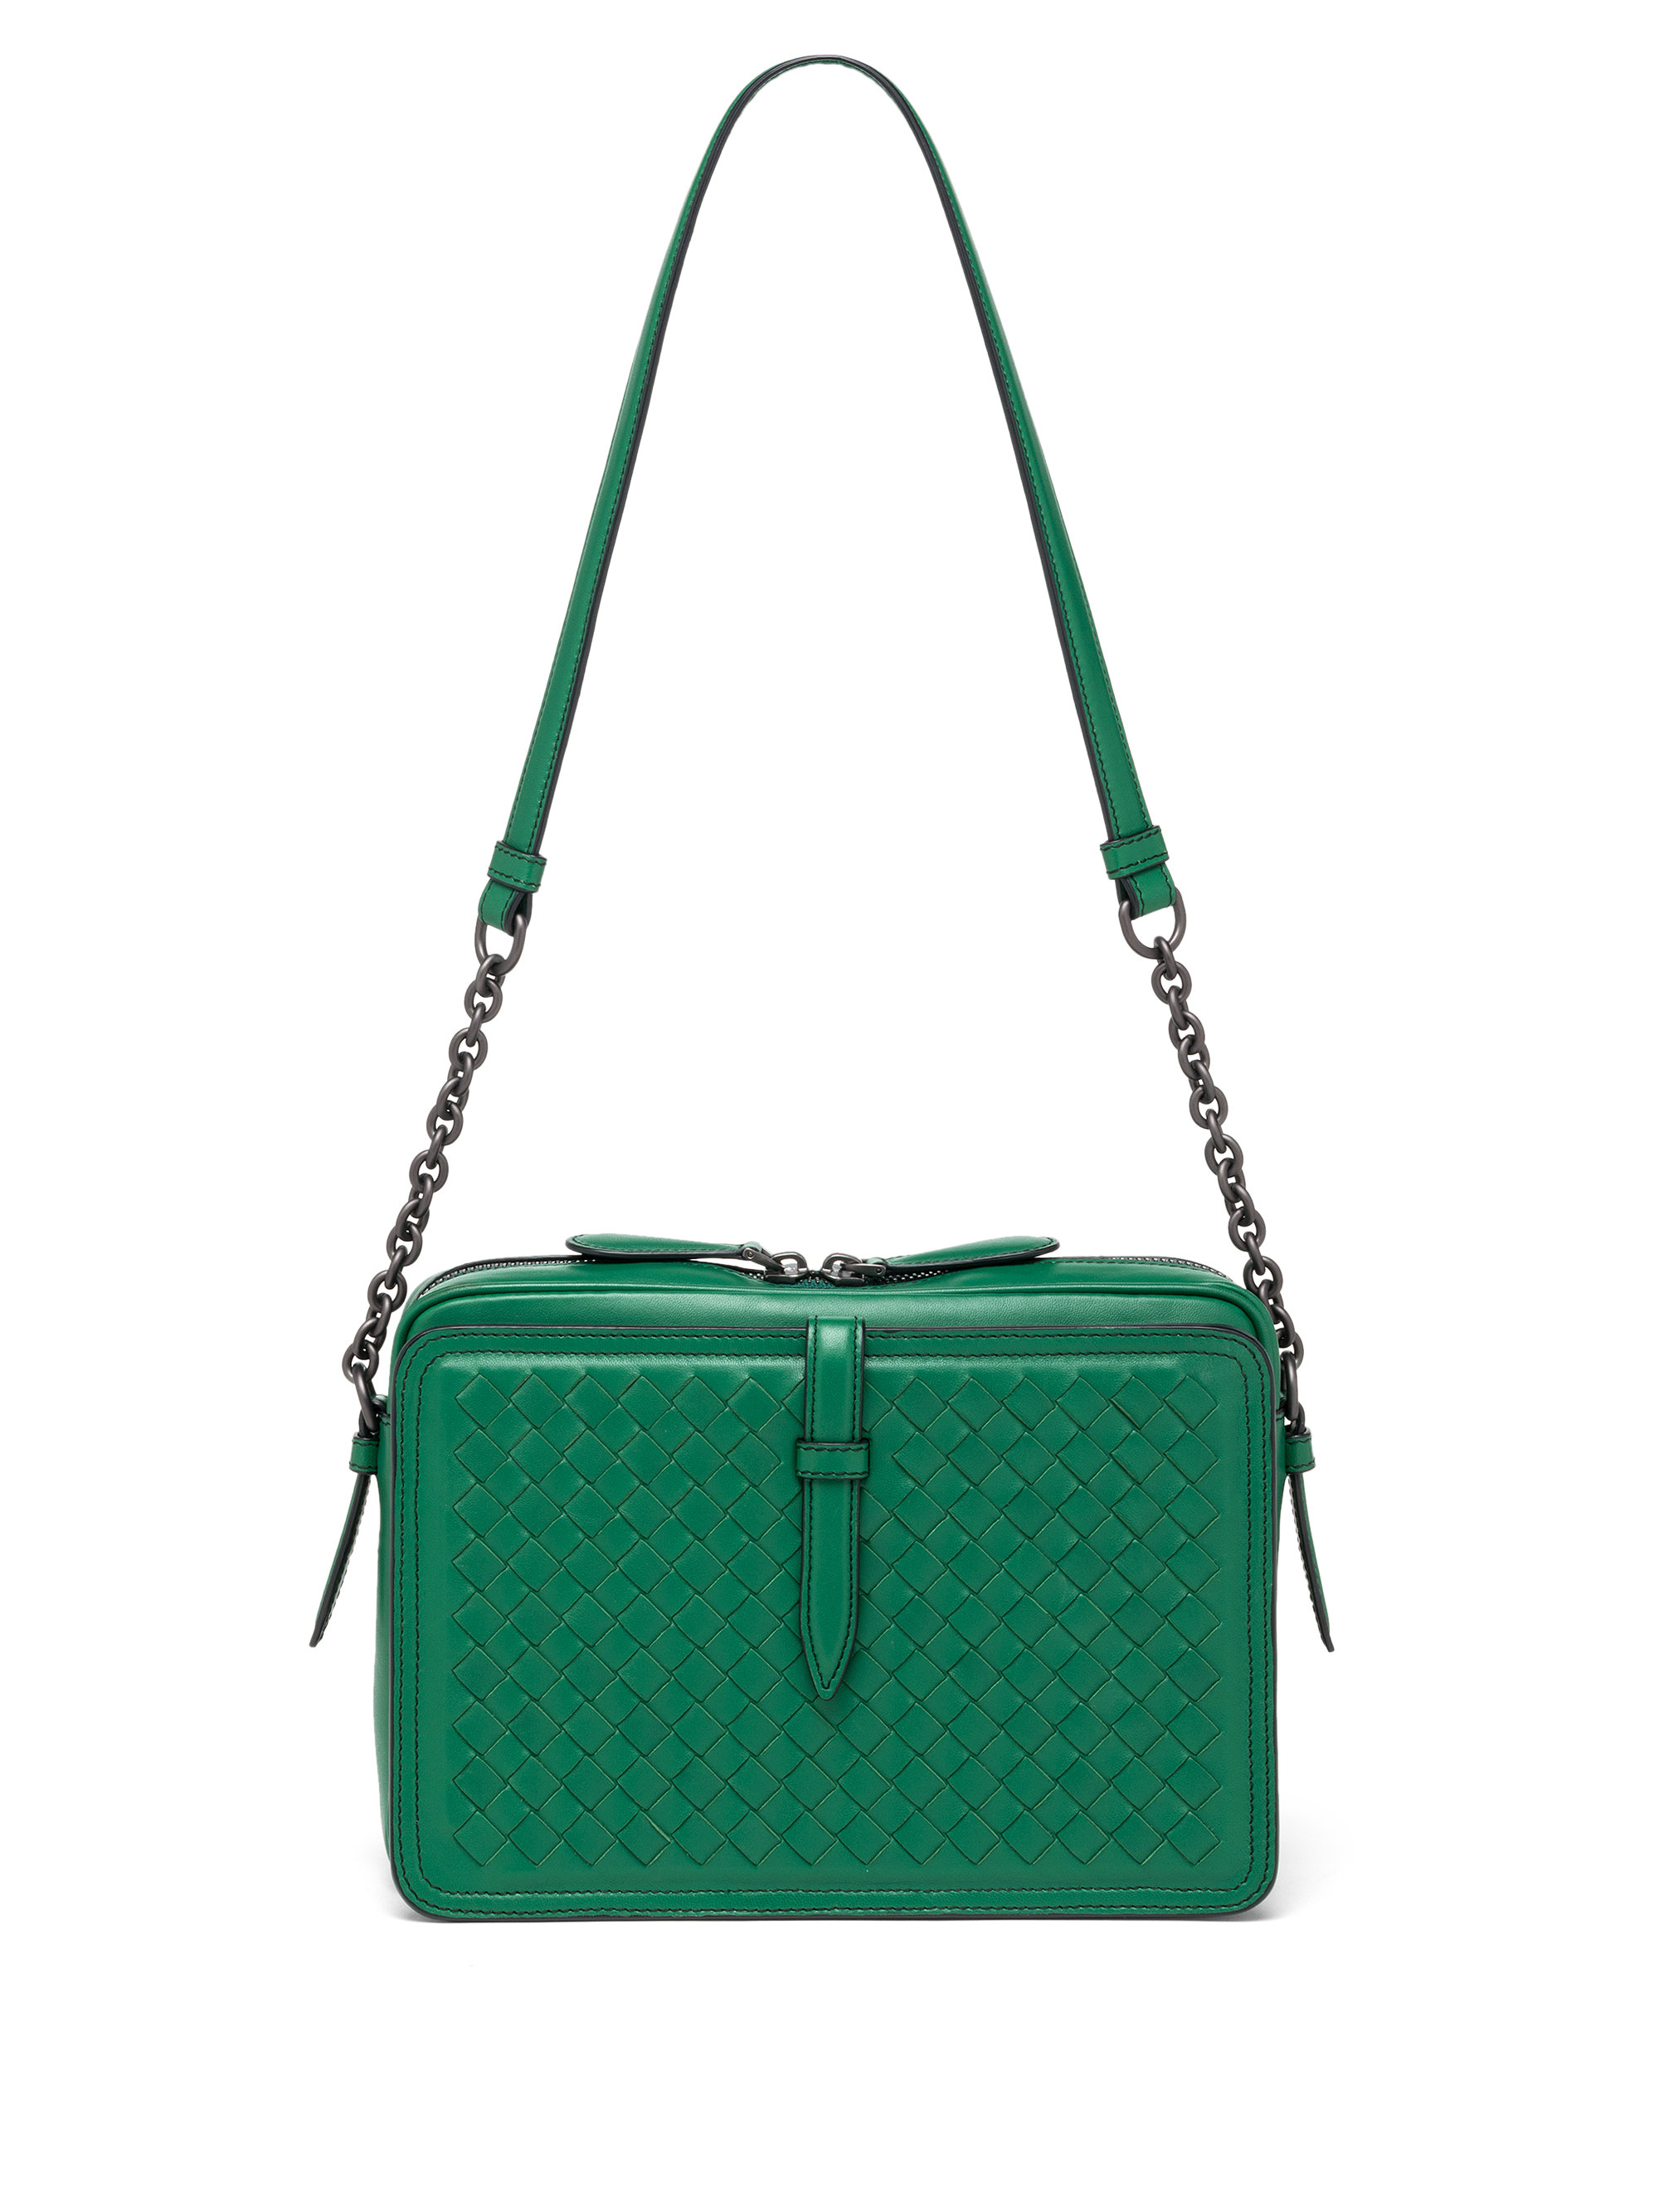 Bottega veneta Intrecciato Leather Box Shoulder Bag in Green | Lyst